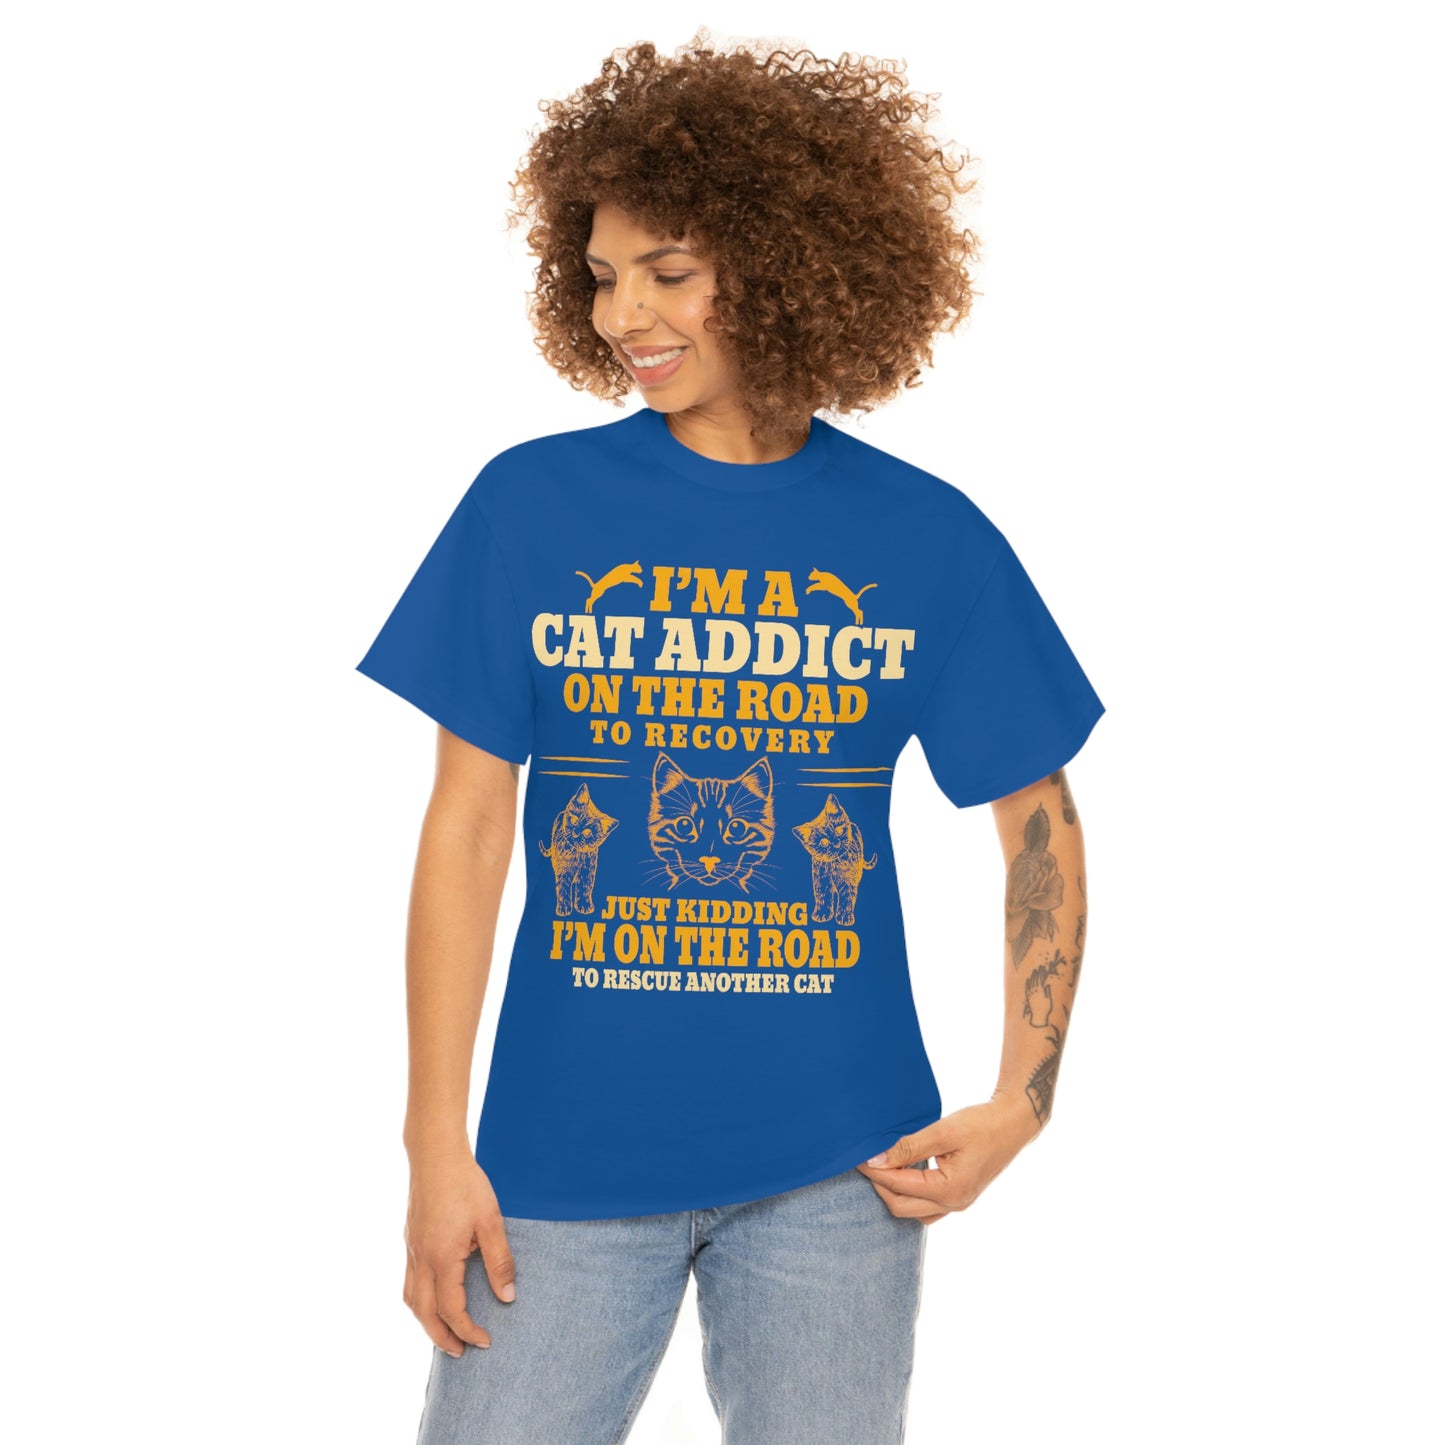 Soy una camiseta de algodón adicta a los gatos